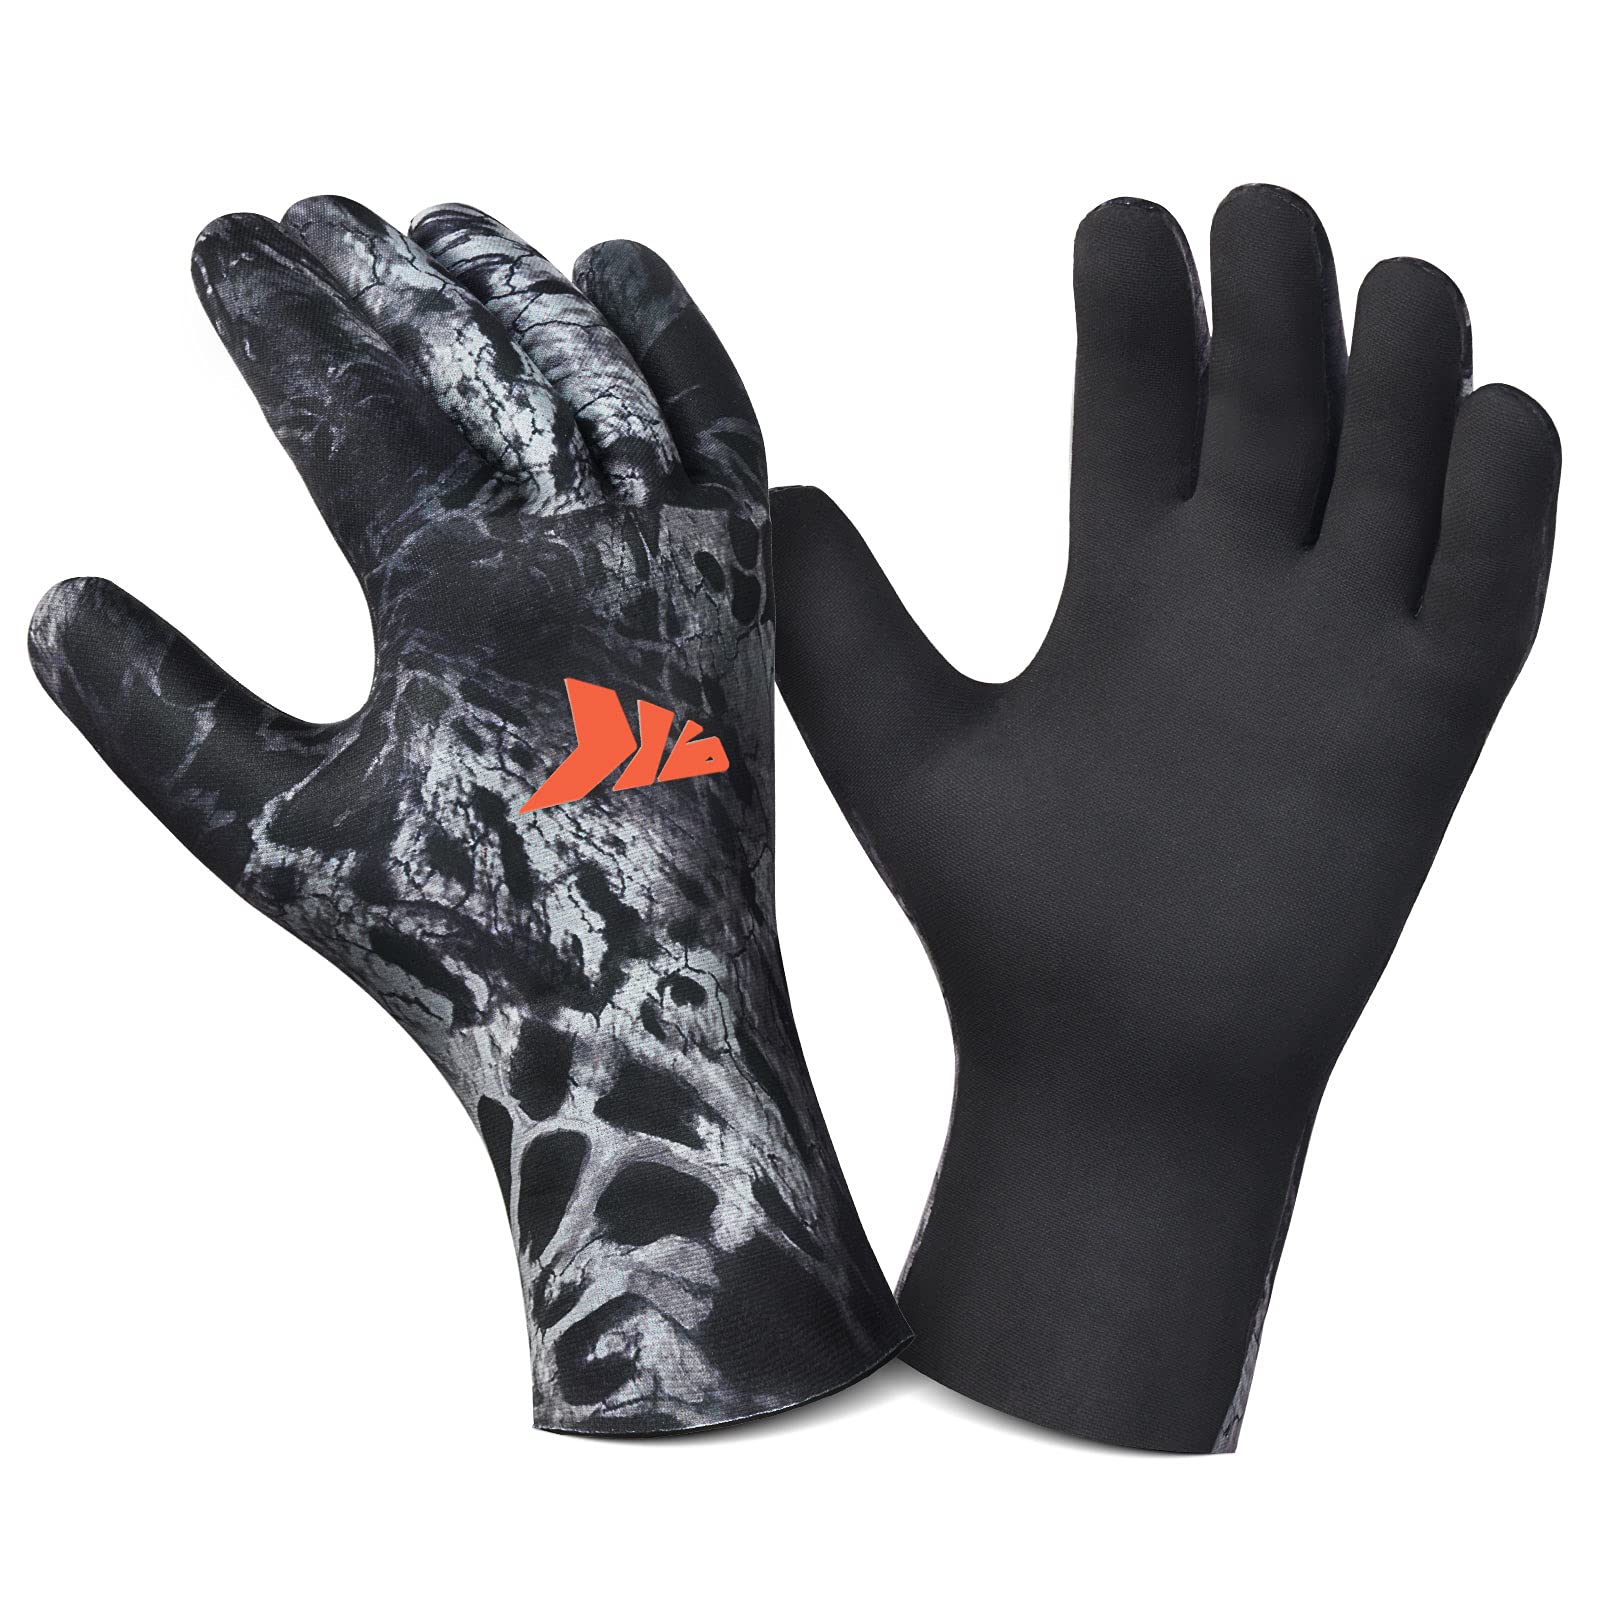 KastKing IceRiver Fishing Gloves 100% Waterproof Cold Winter Weather Fishing  Gloves Fishing Gloves for Men